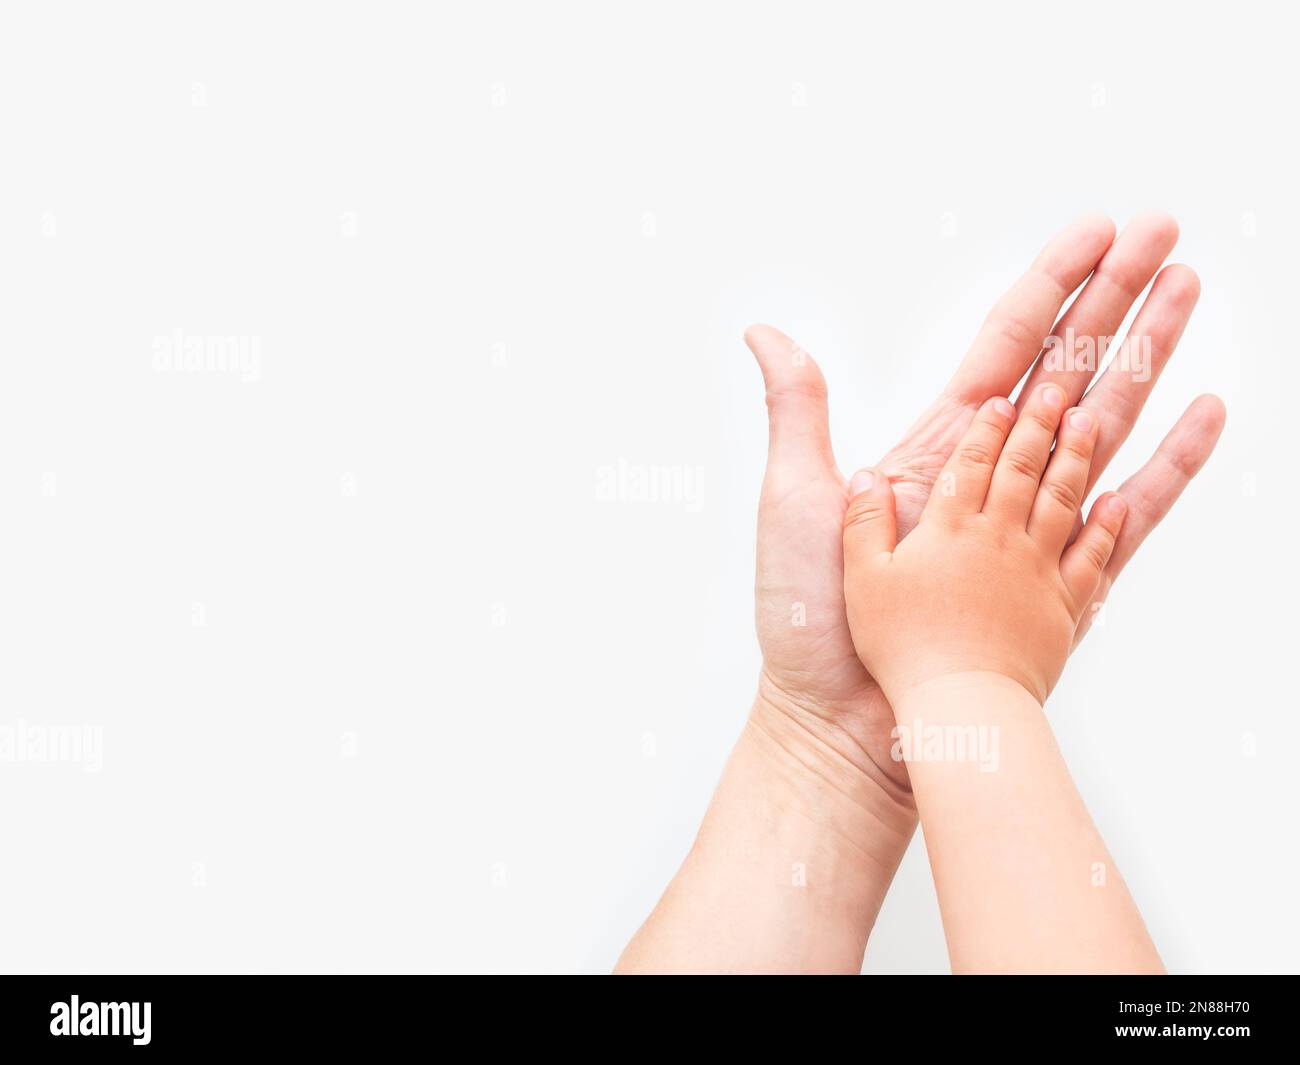 Juntar las palmas de las manos fotografías e imágenes de alta resolución -  Alamy